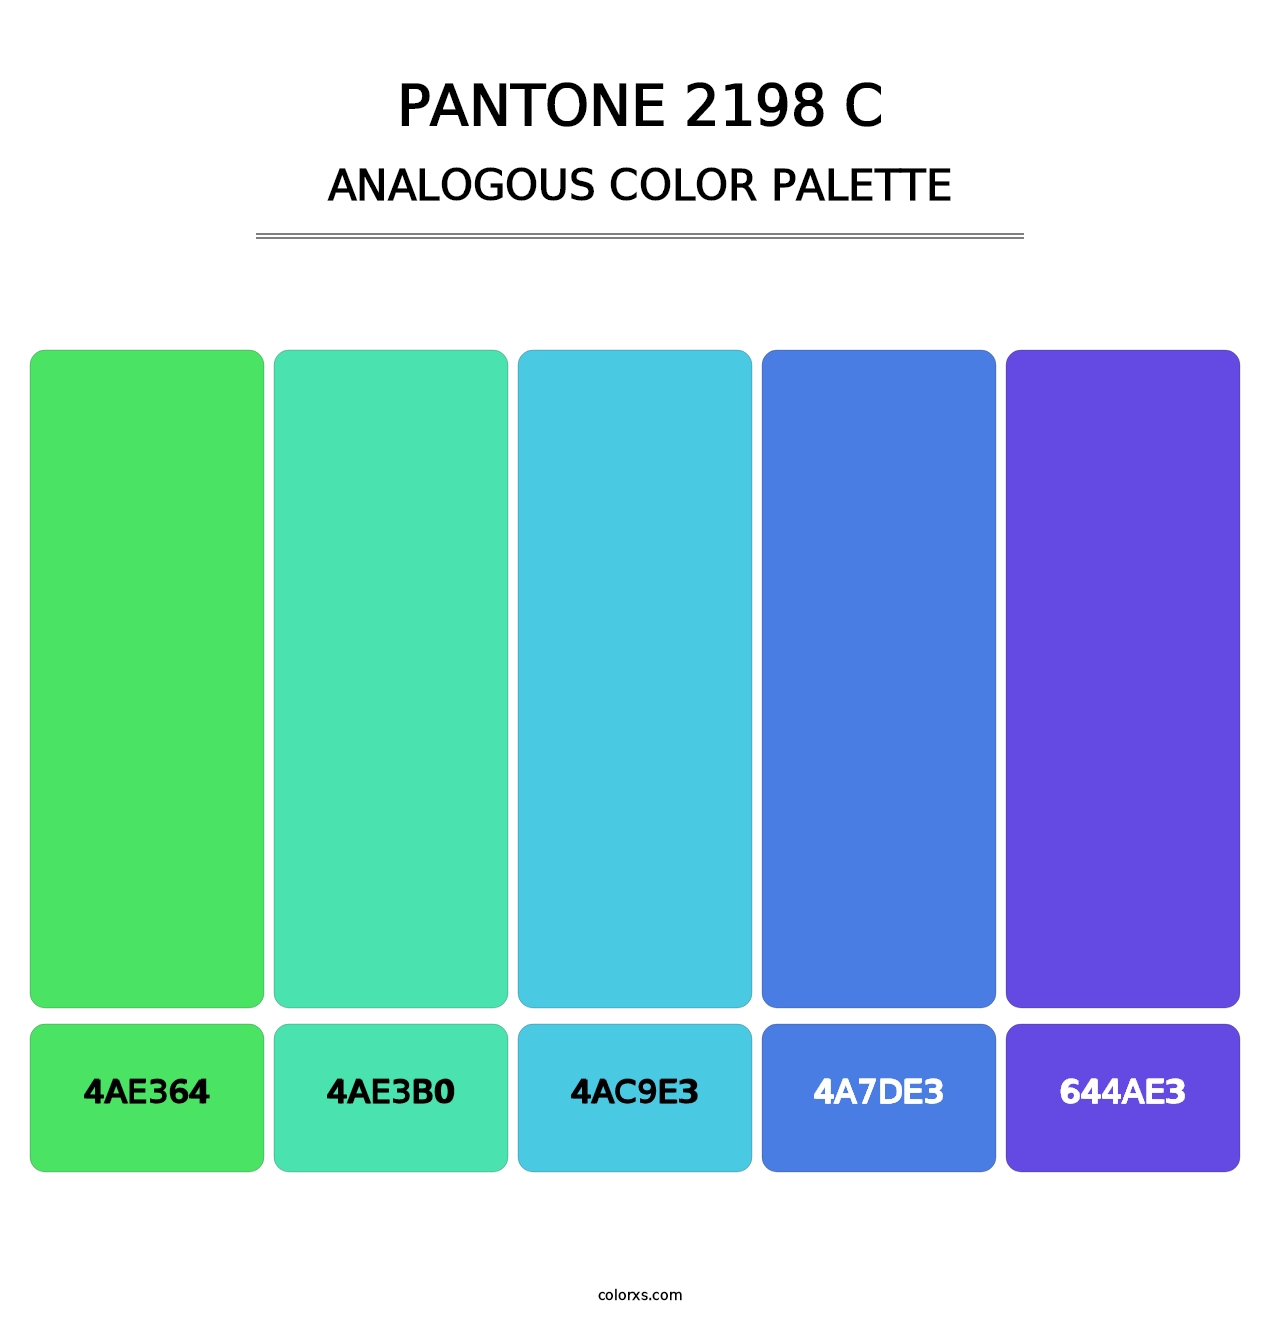 PANTONE 2198 C - Analogous Color Palette